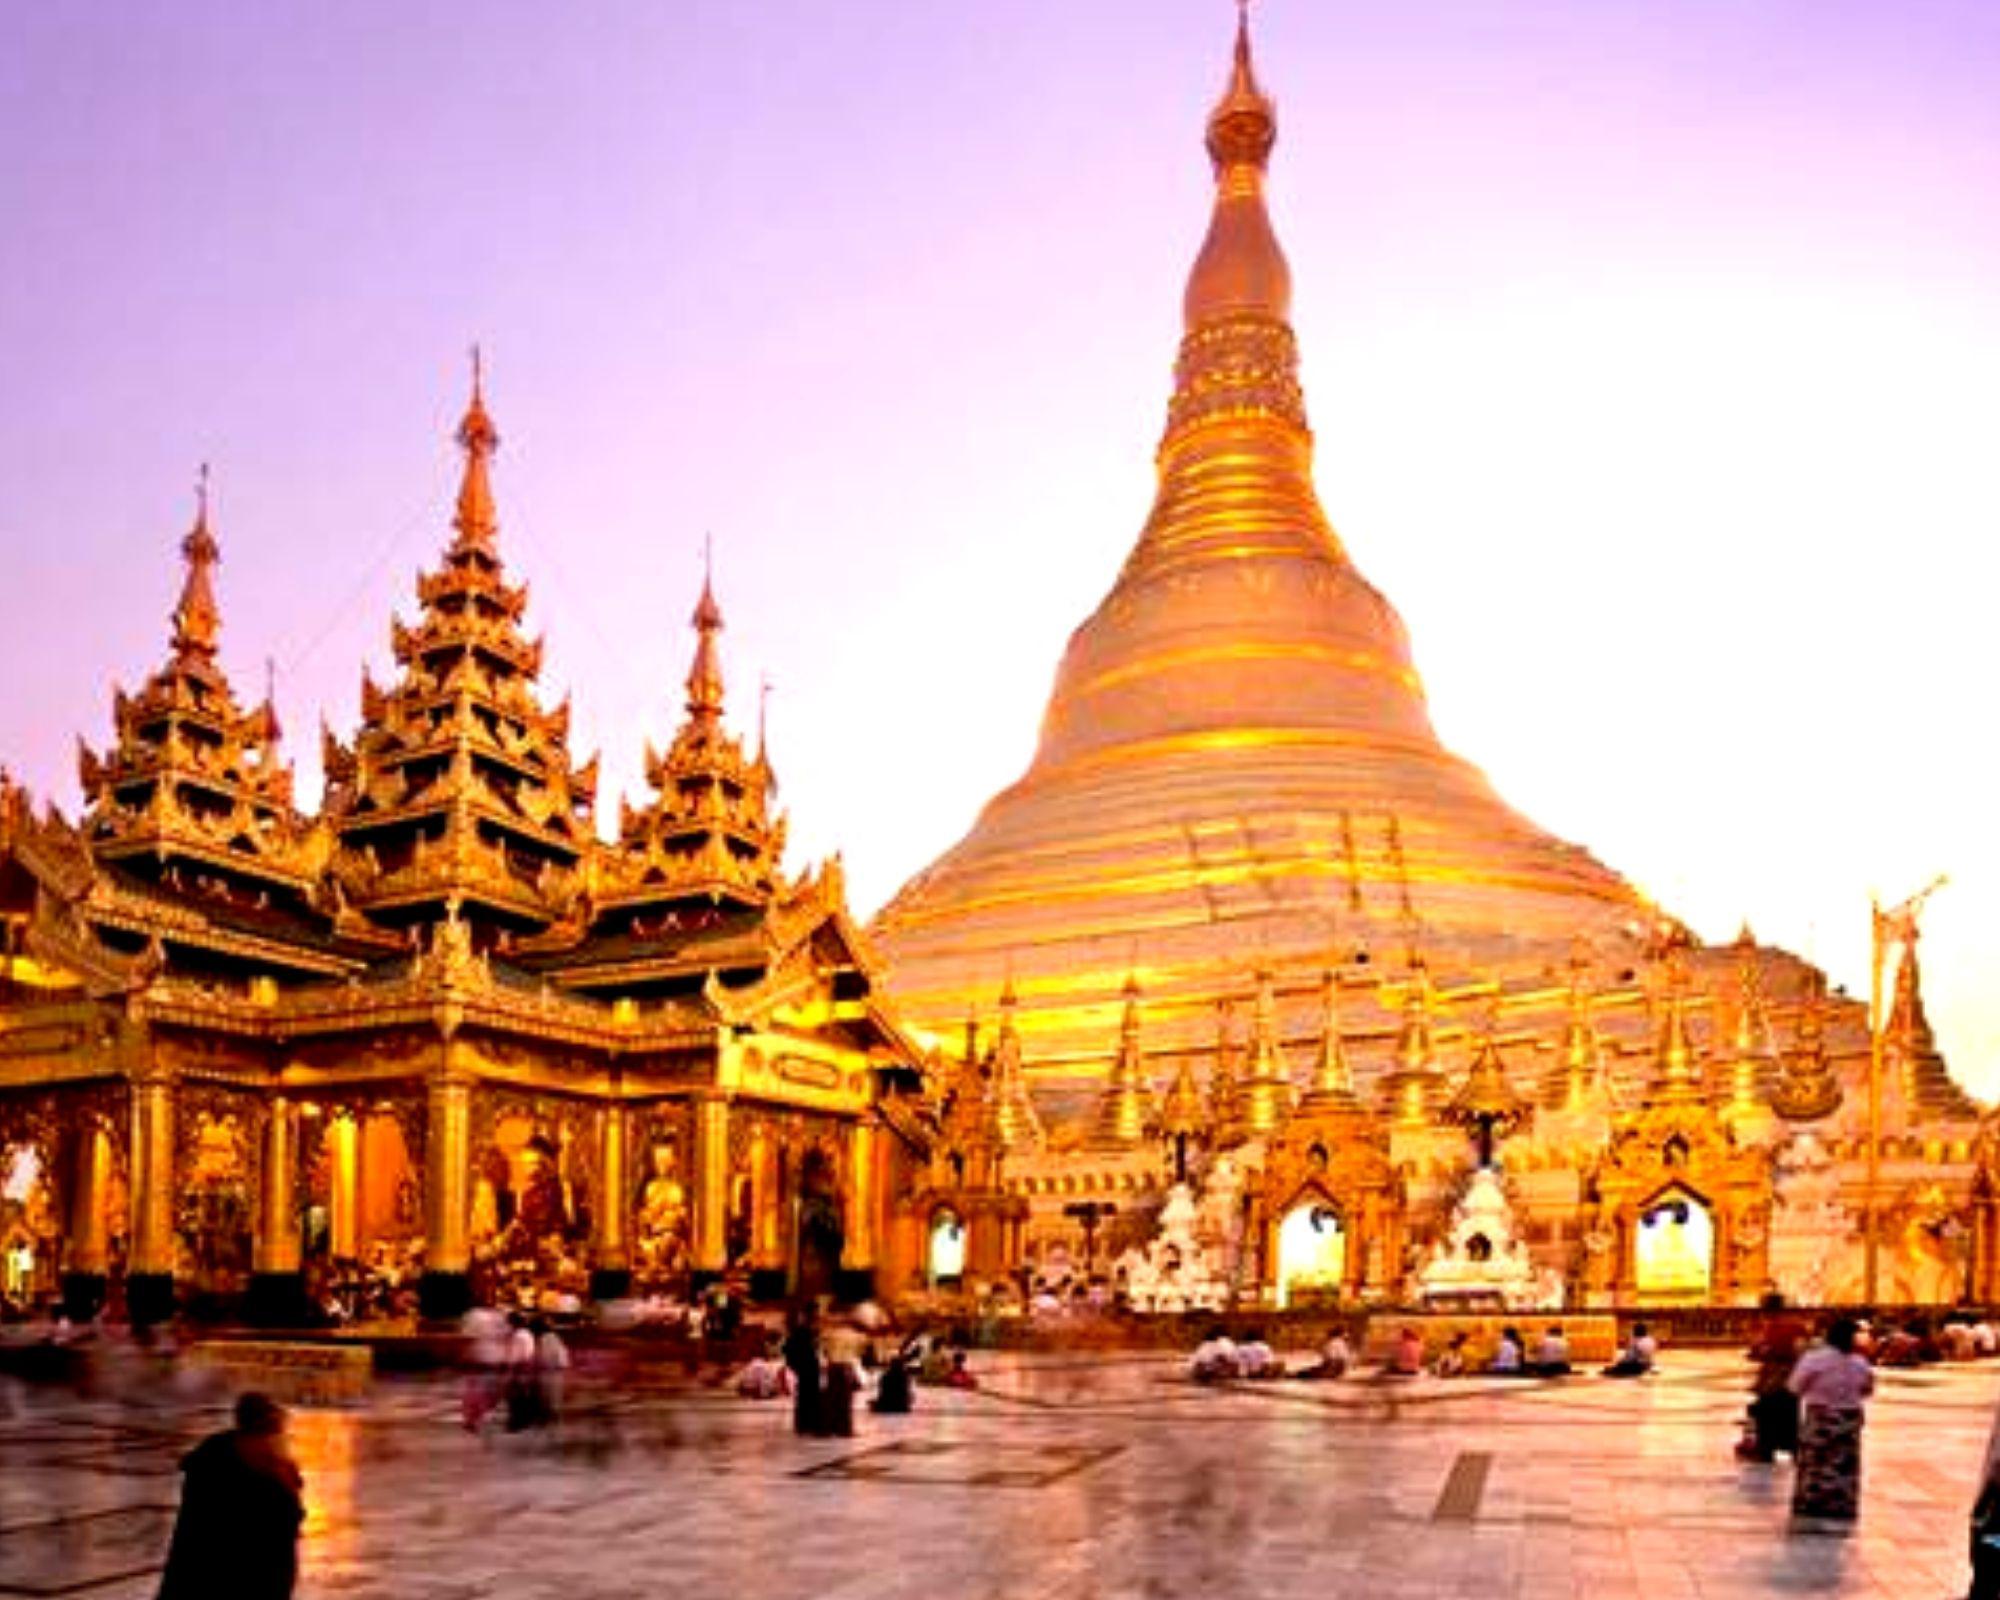 Chùa Vàng chùa Bạc - Kiến trúc độc đáo xứ sở chùa tháp Campuchia